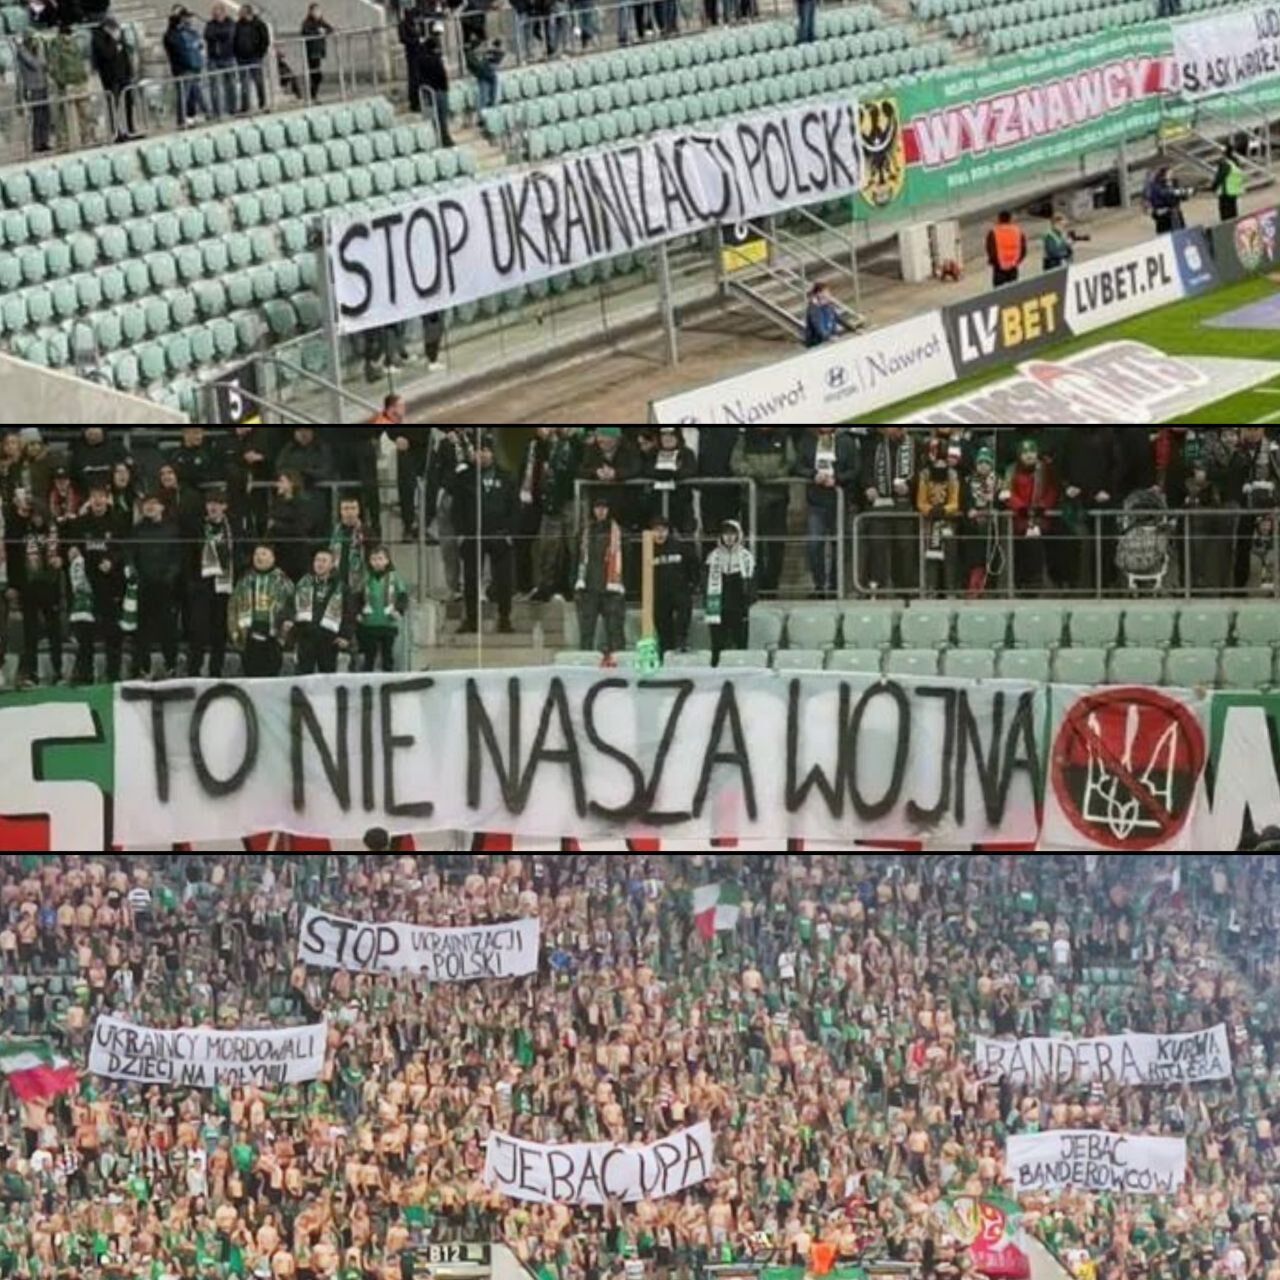 У Польщі влаштували протест проти України, розмістивши образливі банери під час футболу. Фотофакт